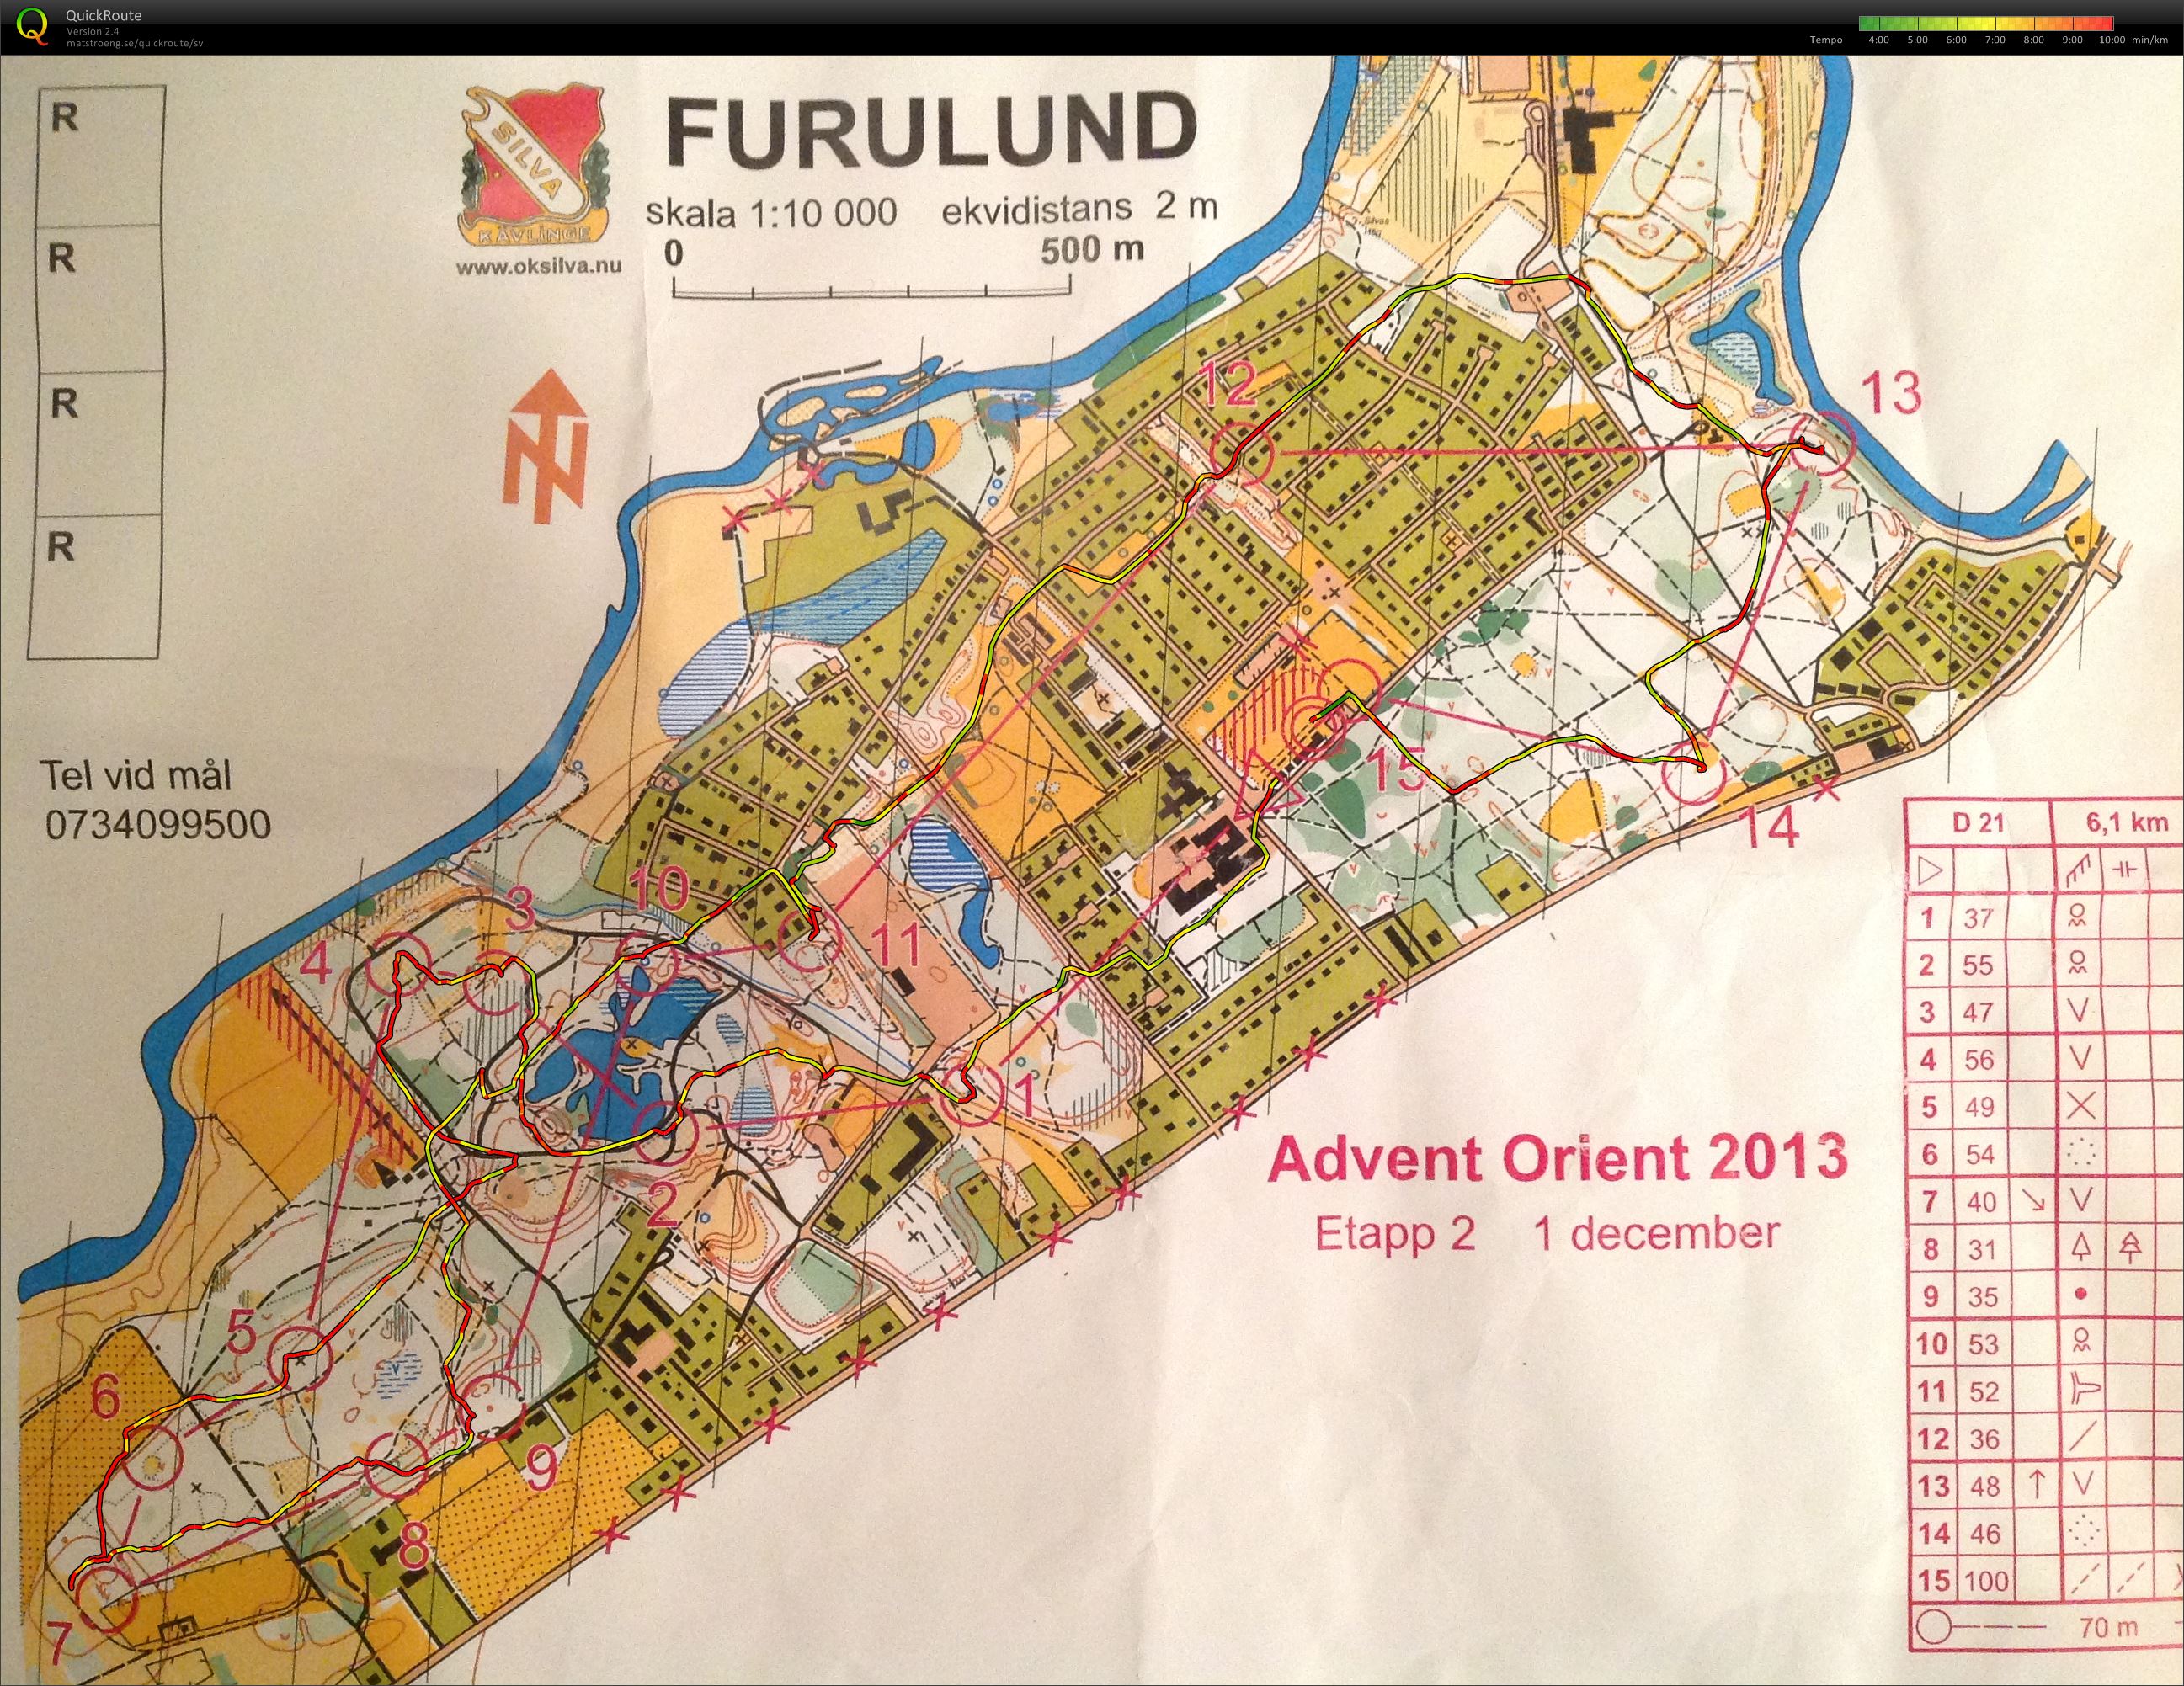 Advent Orient Furulund (01/12/2013)